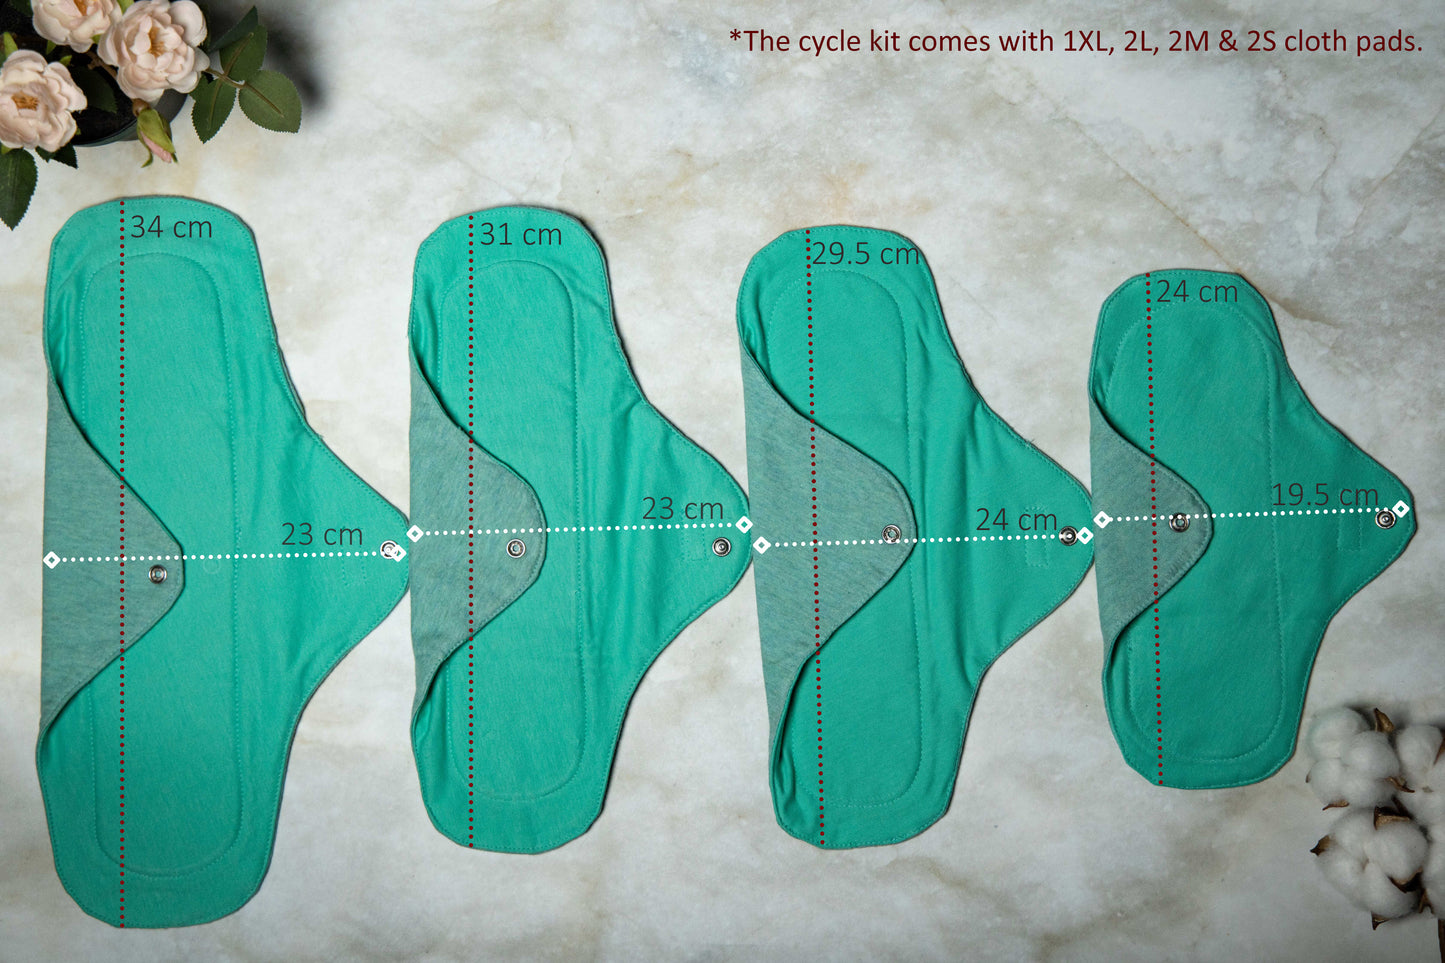 Boondh Cloth Pad Cycle Kit (2S, 2M, 2L, 1XL)